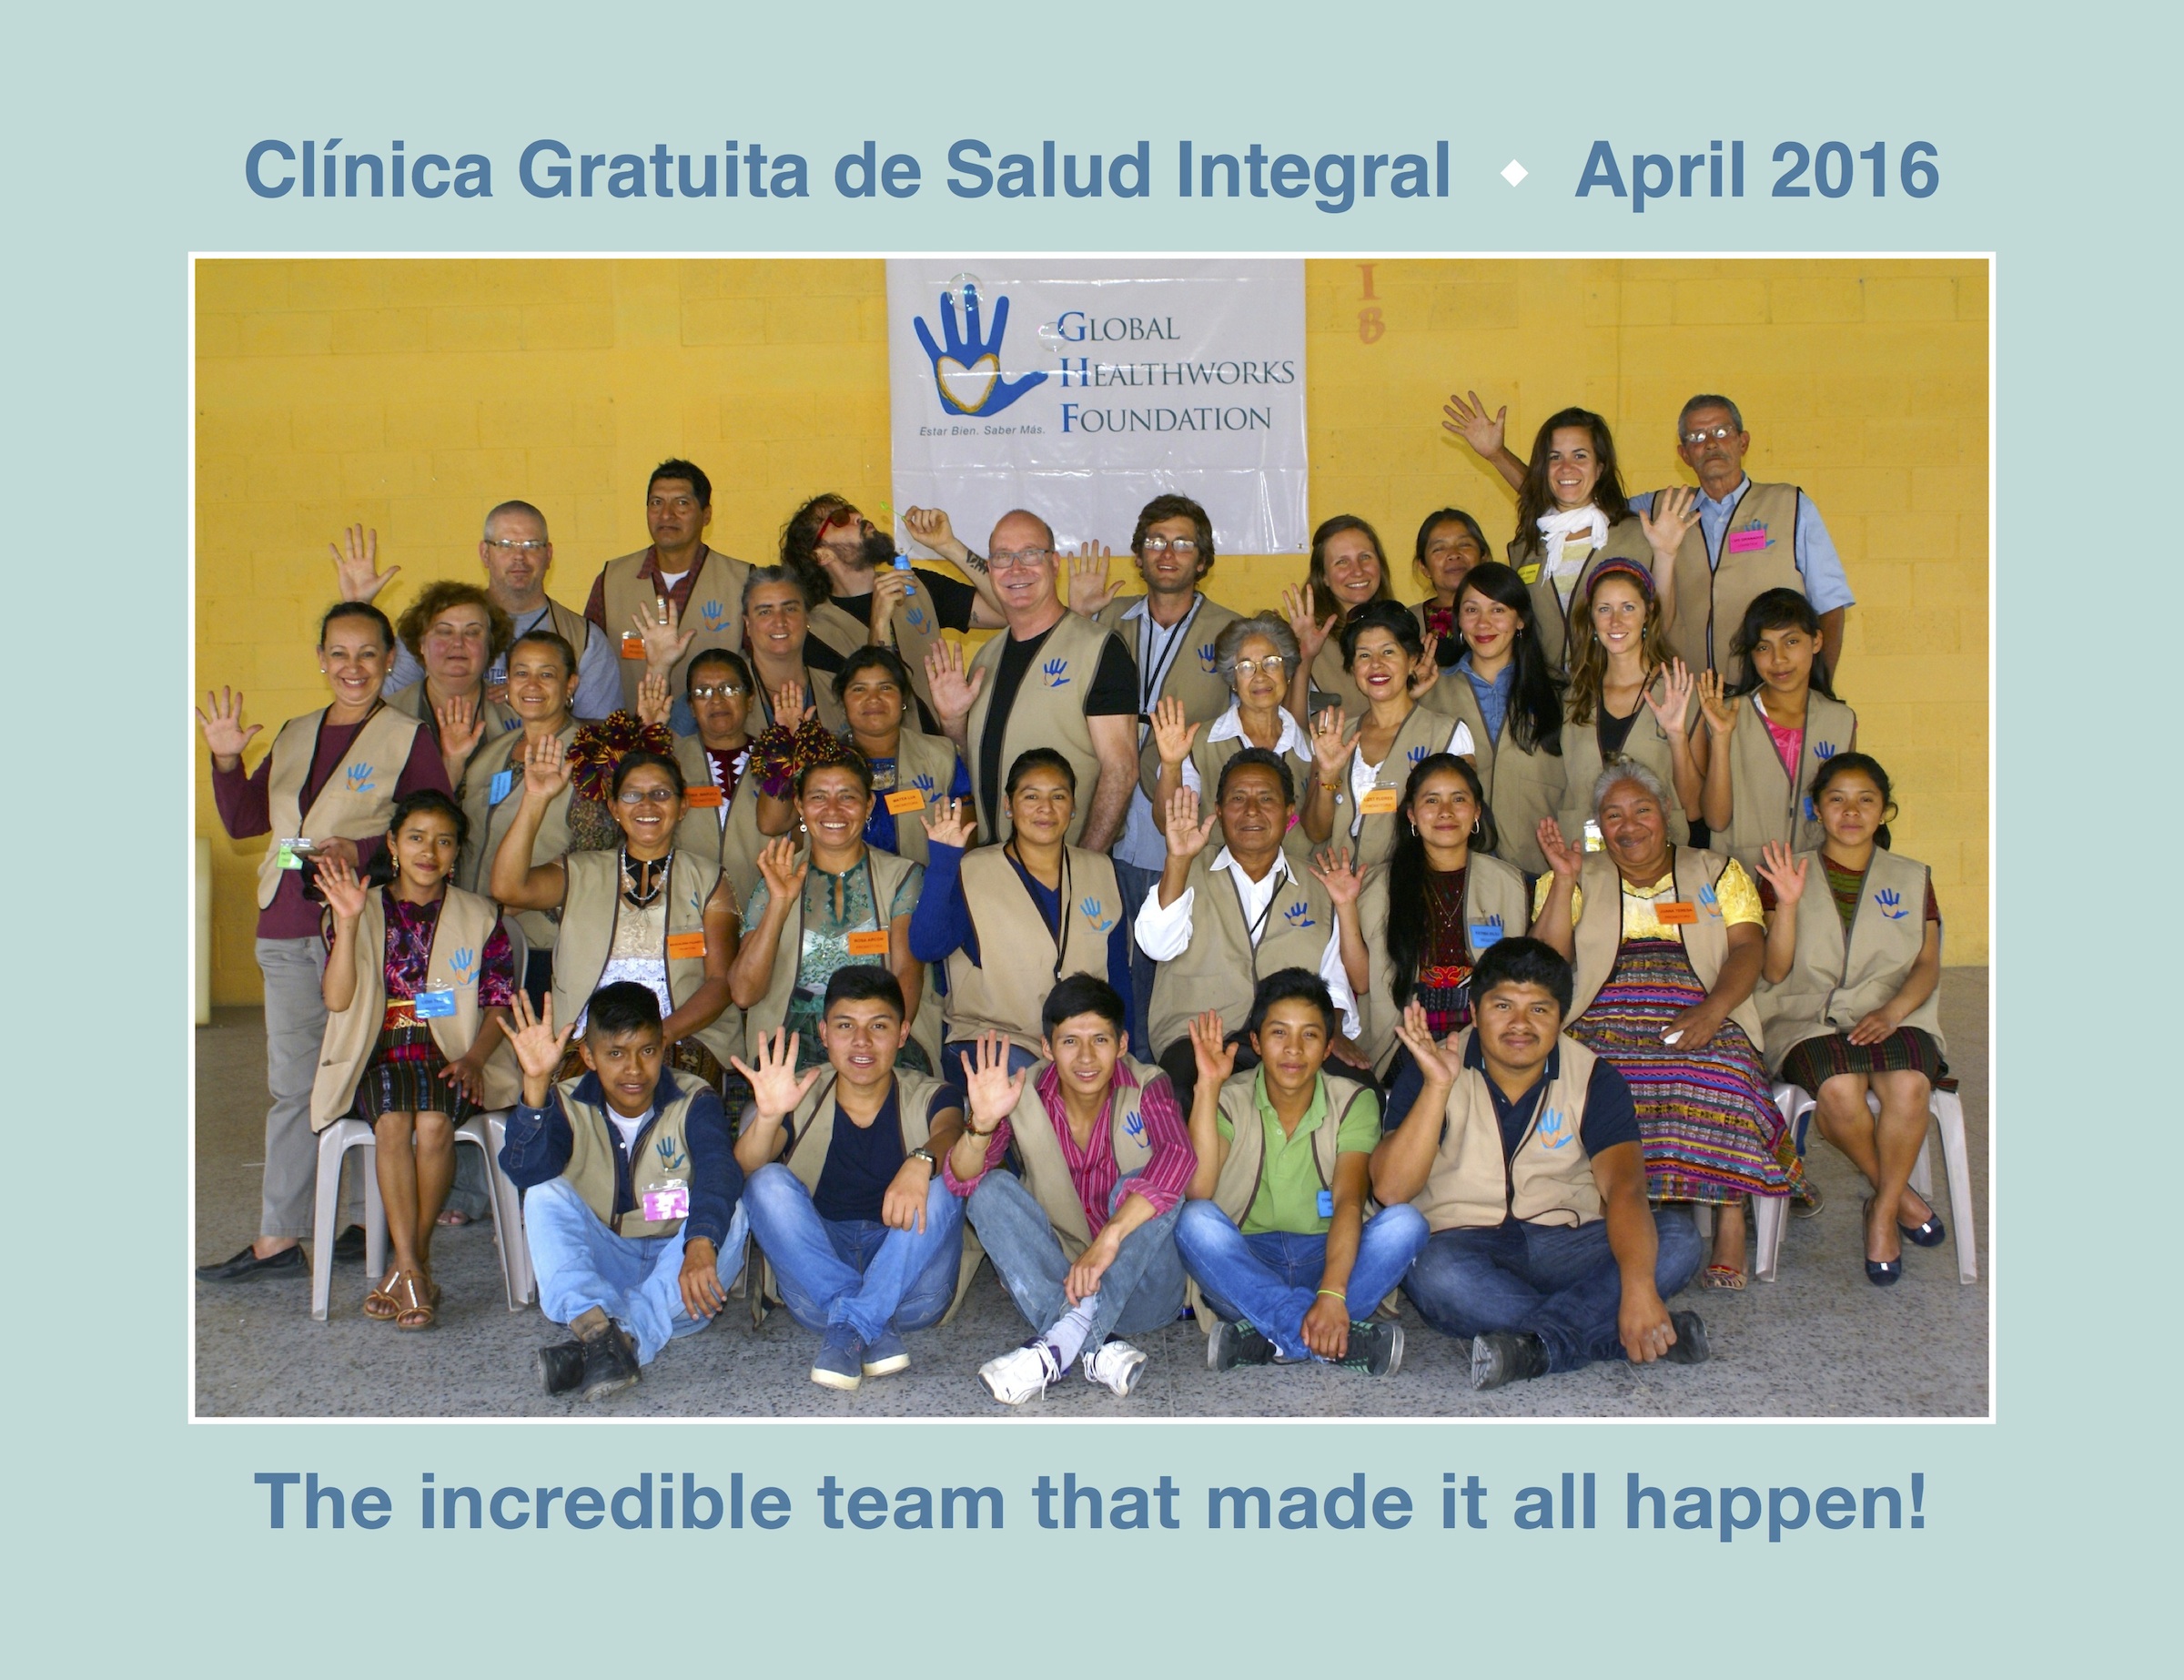 901 Clinica Gratuita de Salud Integral Team Photo 10x13 2016-Apr.jpeg